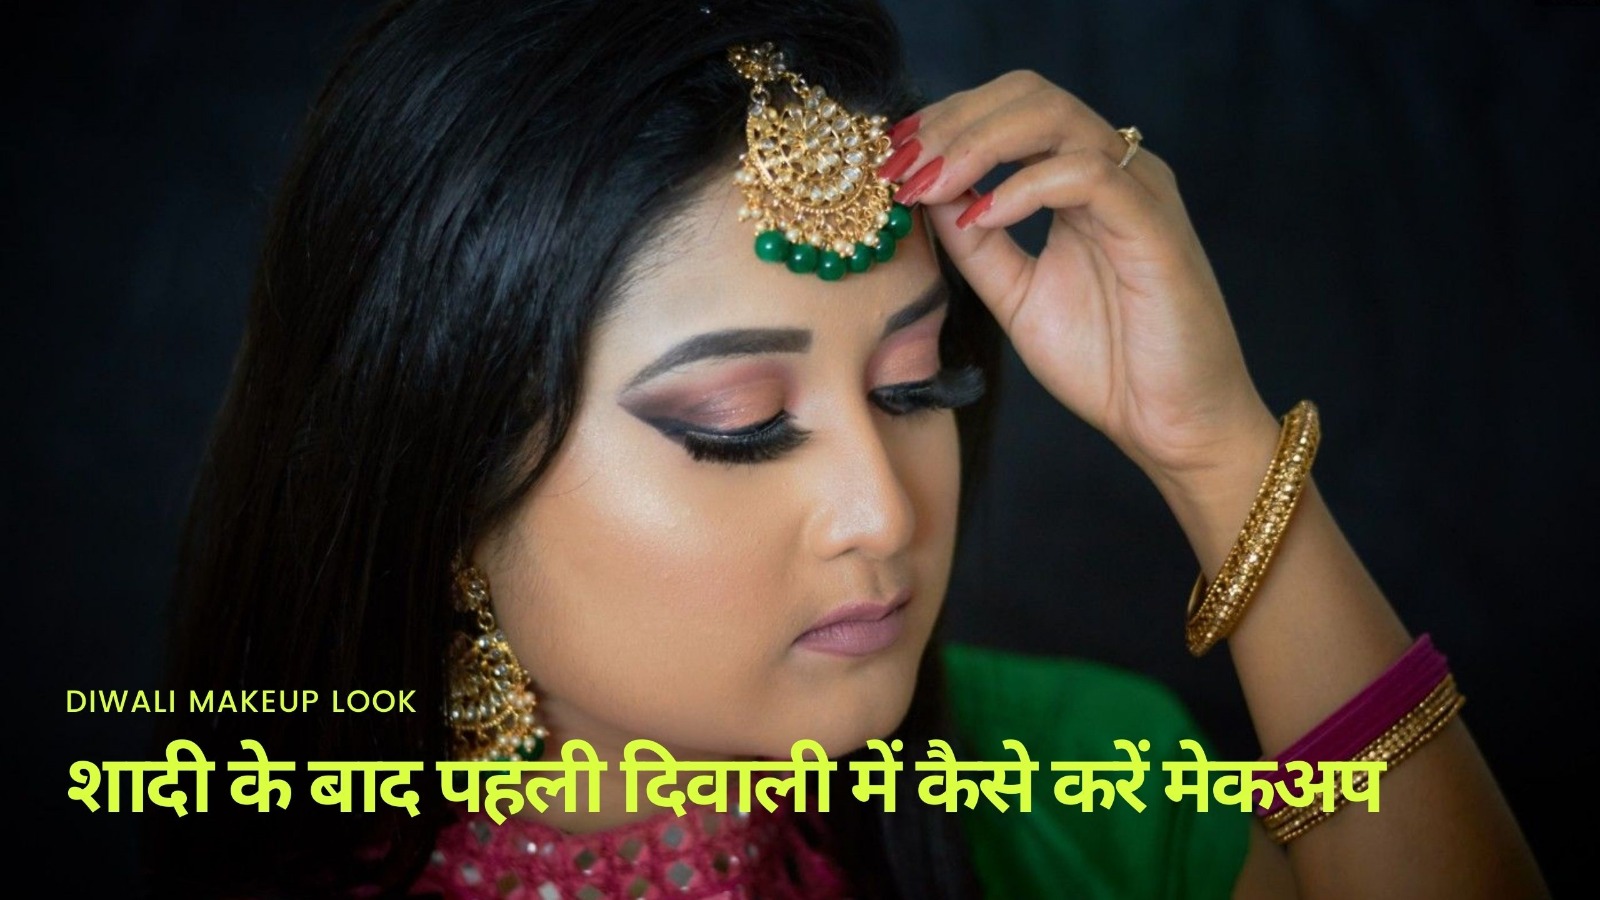 Diwali Makeup Look शादी के बाद पहली दिवाली में कैसे करें मेकअप